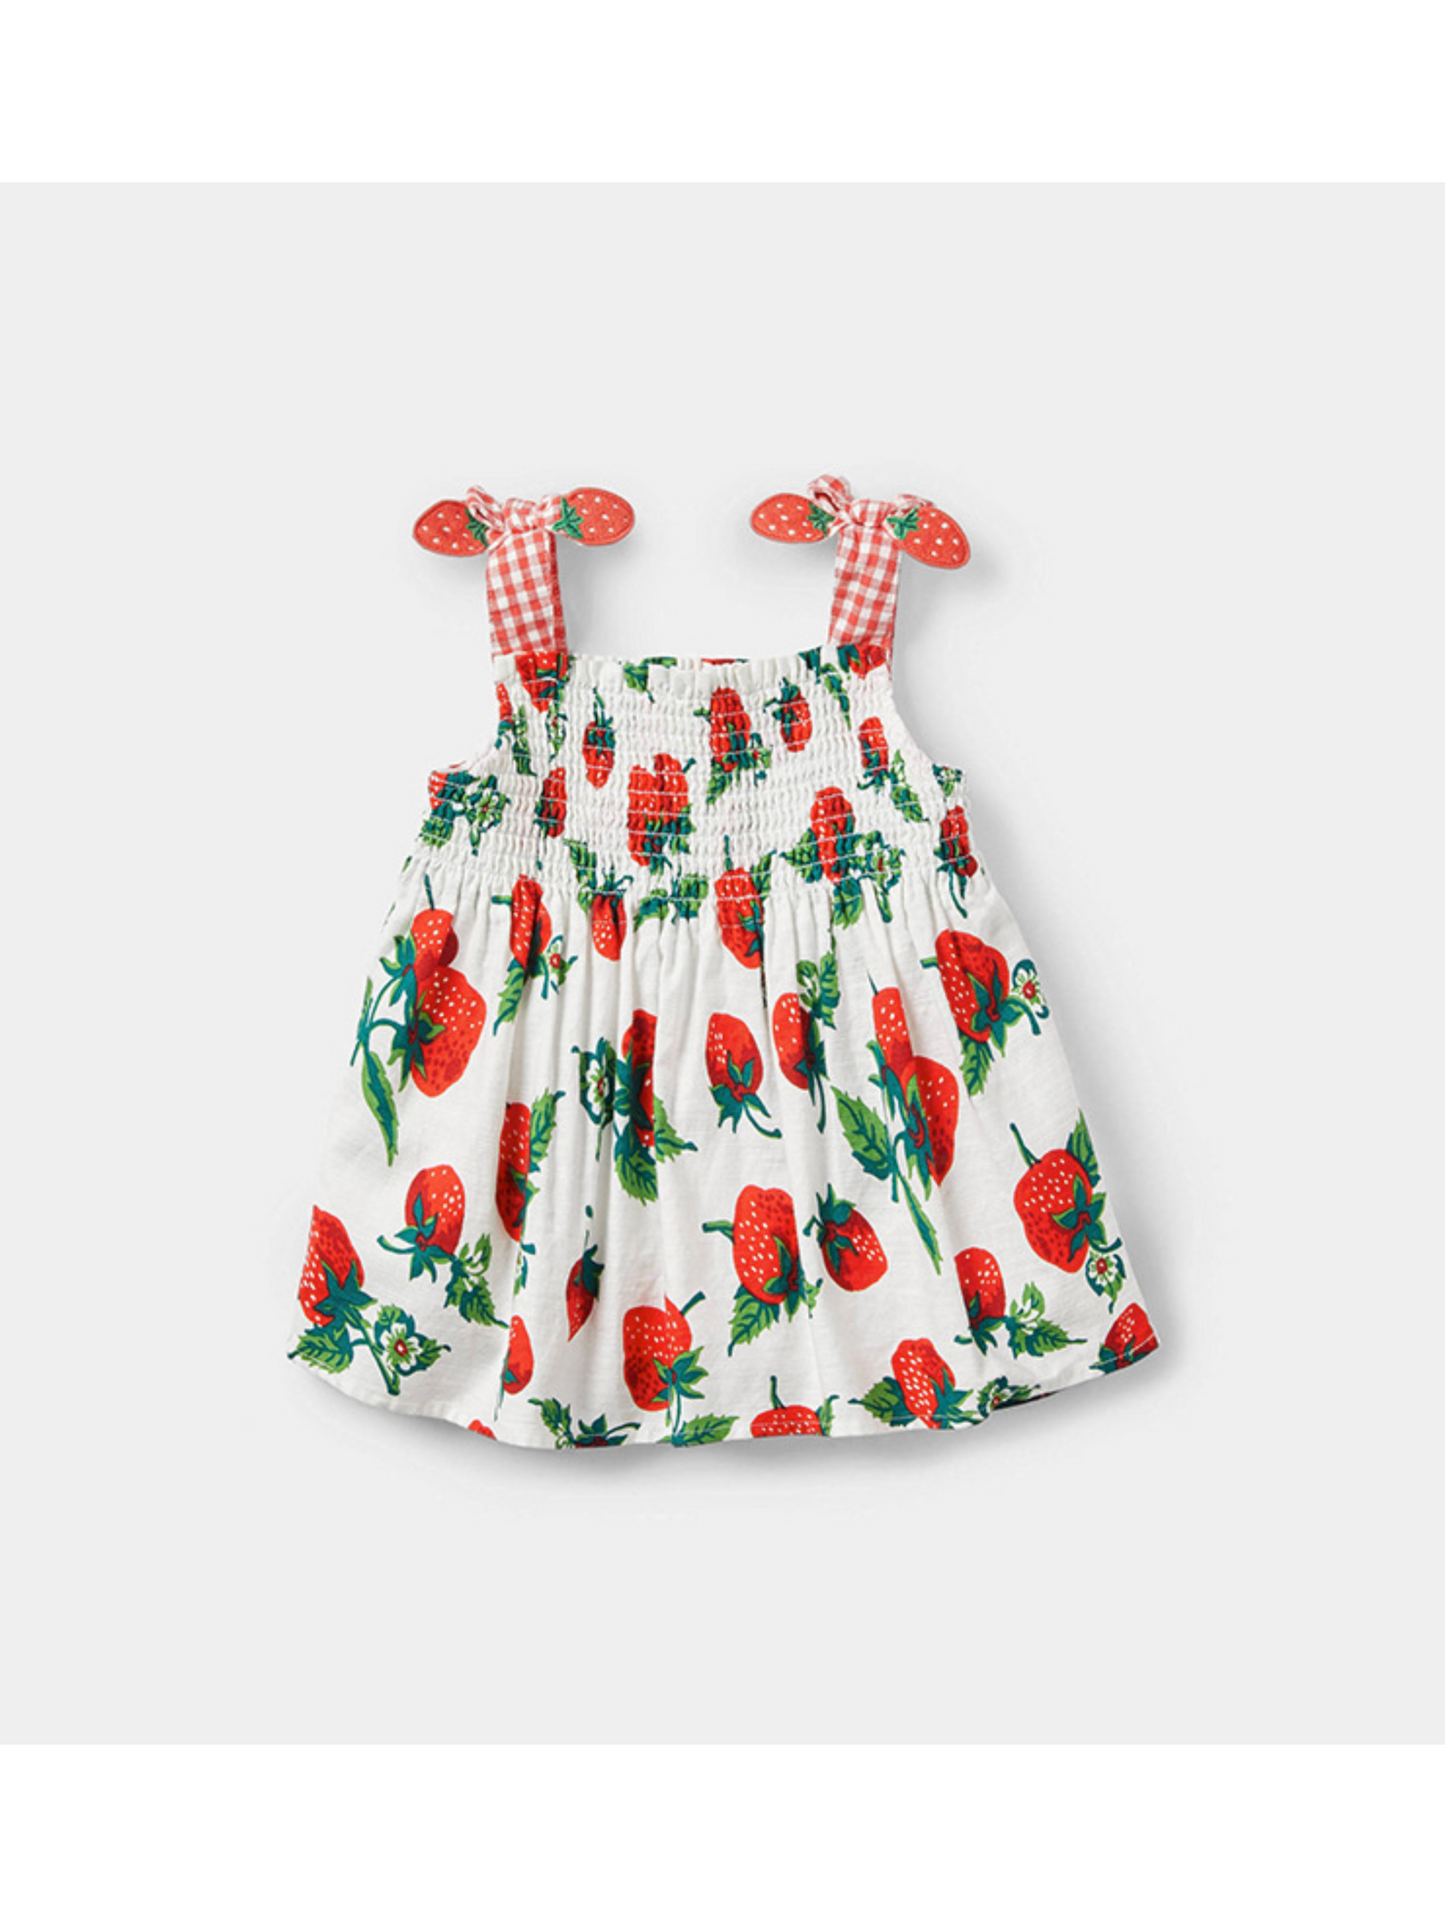 Strawberry Pinafore Dress